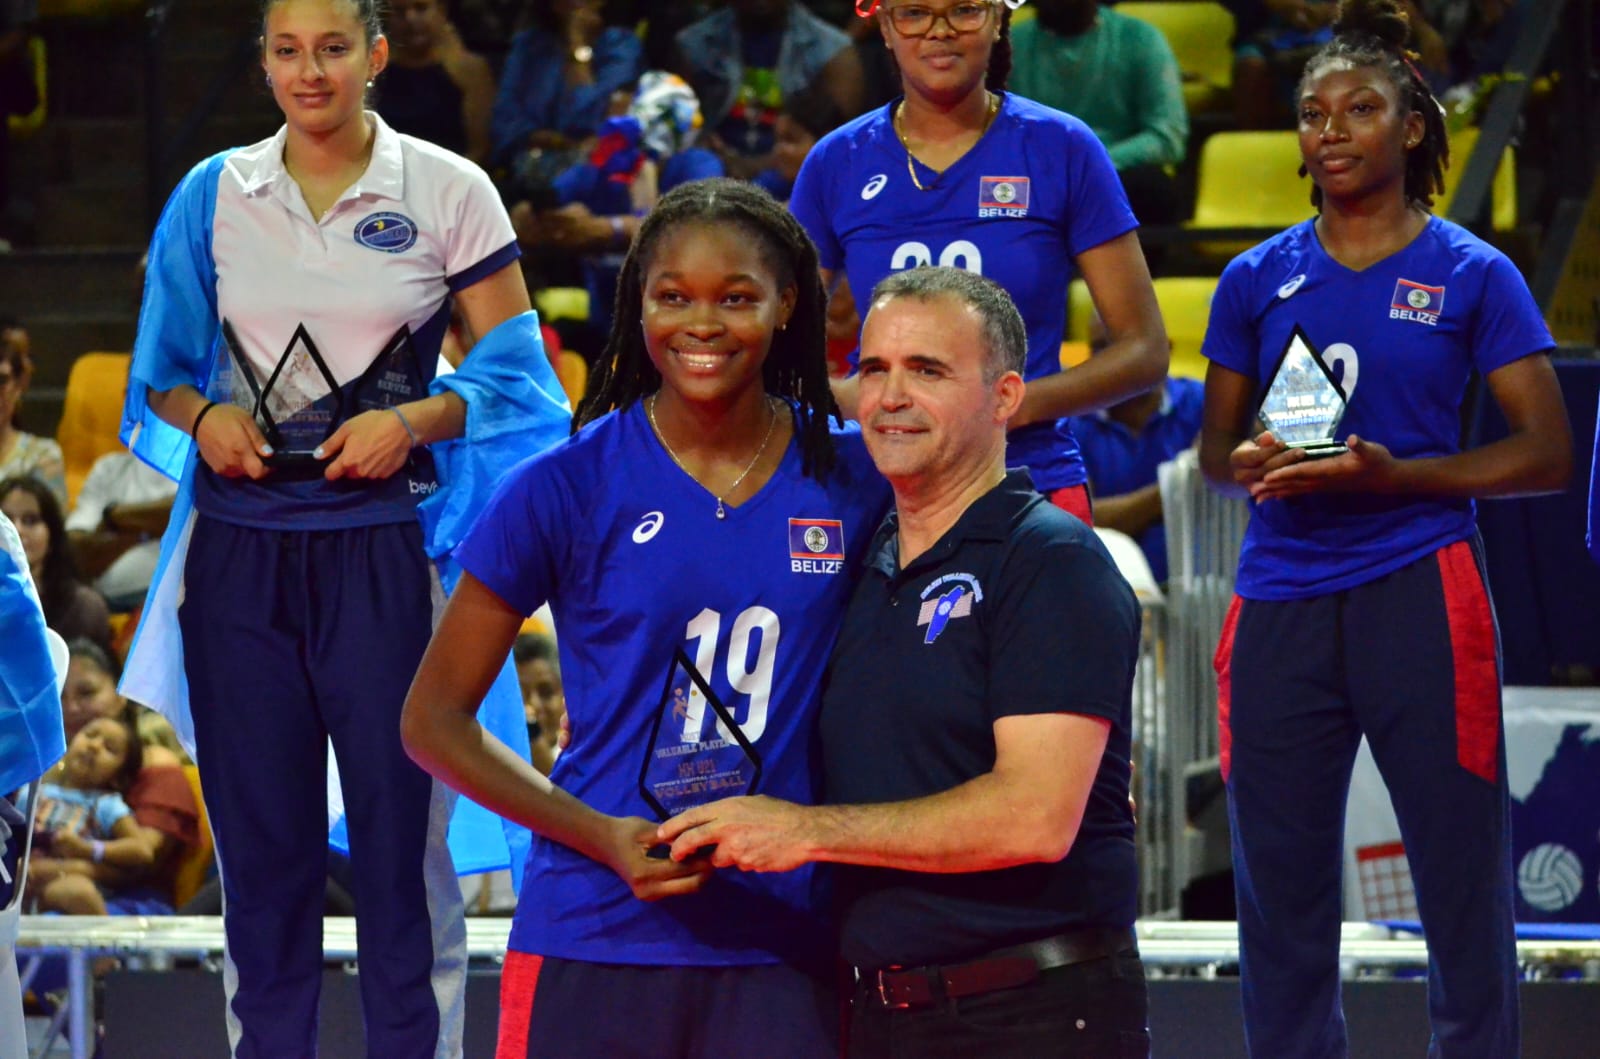 Nisaan Martínez of Belize Named Most Valuable Player in AFECAVOL U21 Women’s Championship